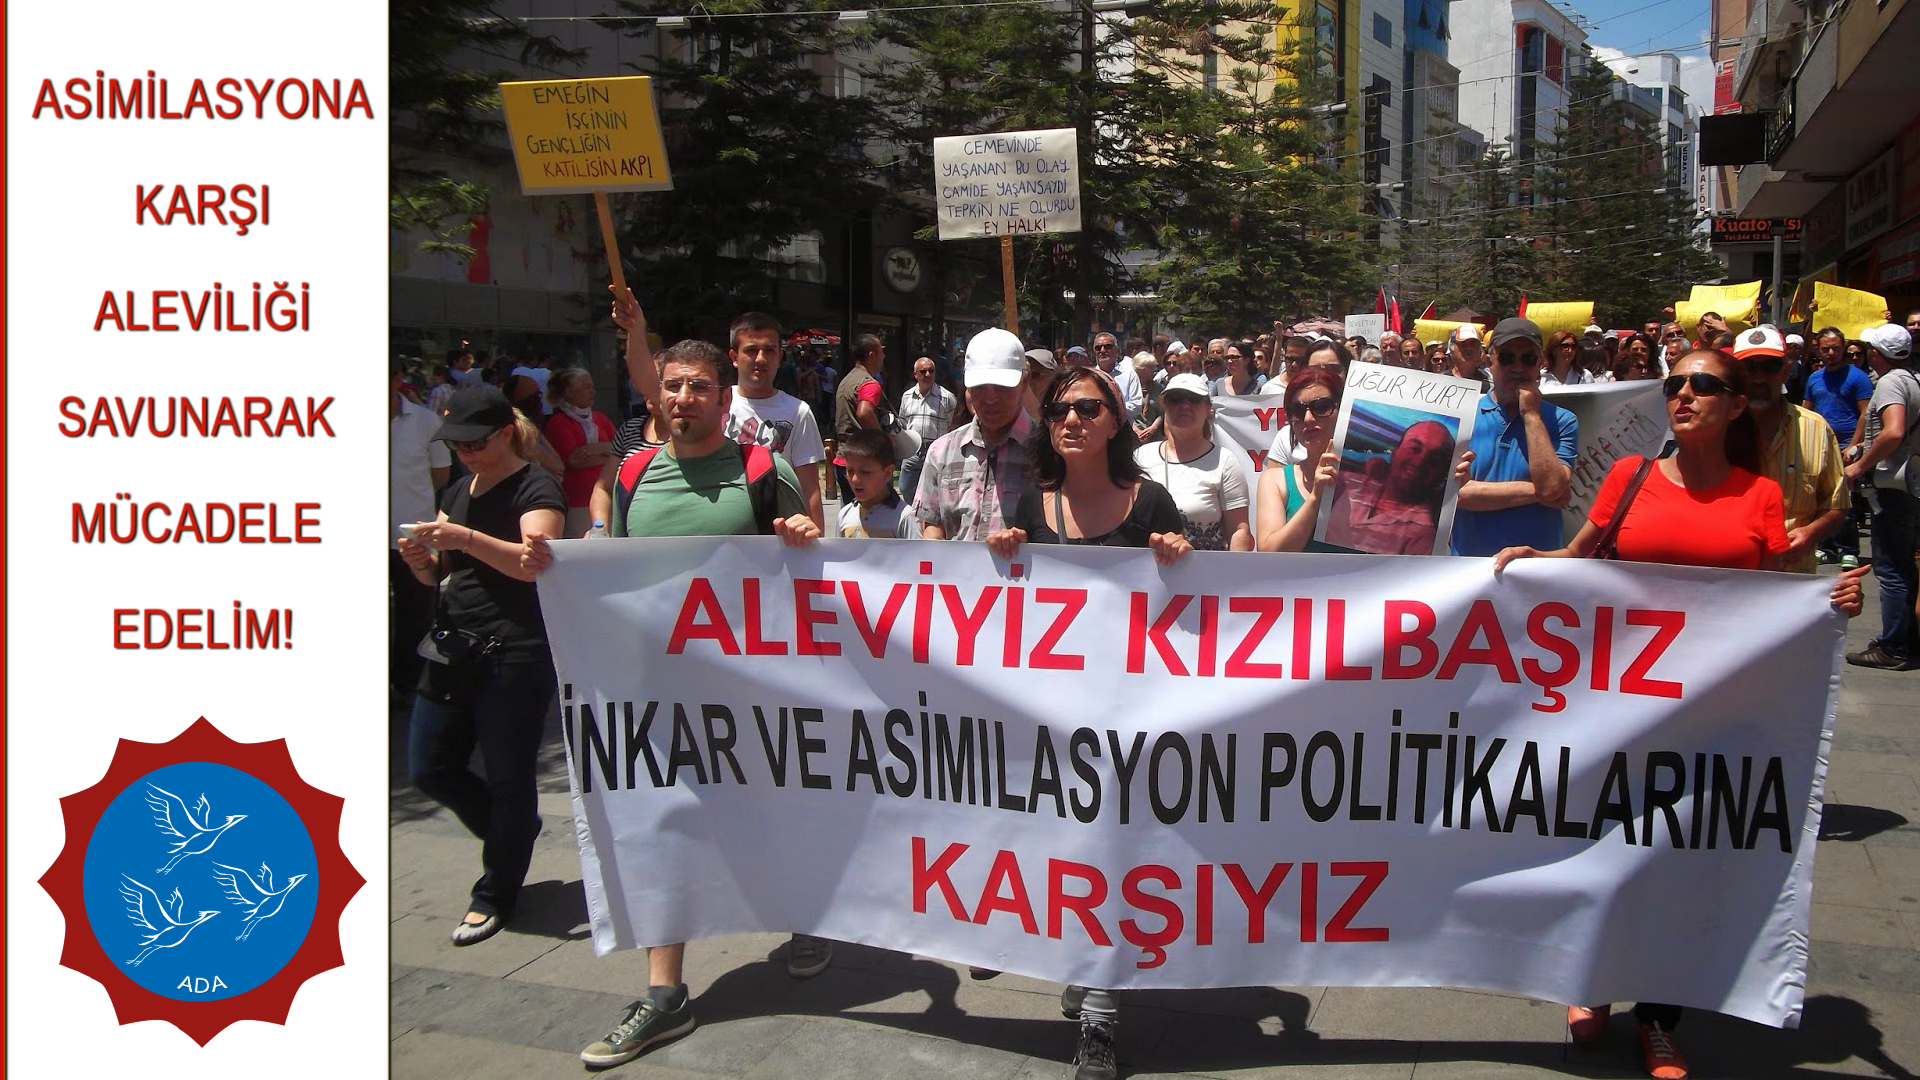 AKP’nin Alevileri asimile etme politikasına alet olmak, Aleviliğe ihanet etmekle eş değerdedir!